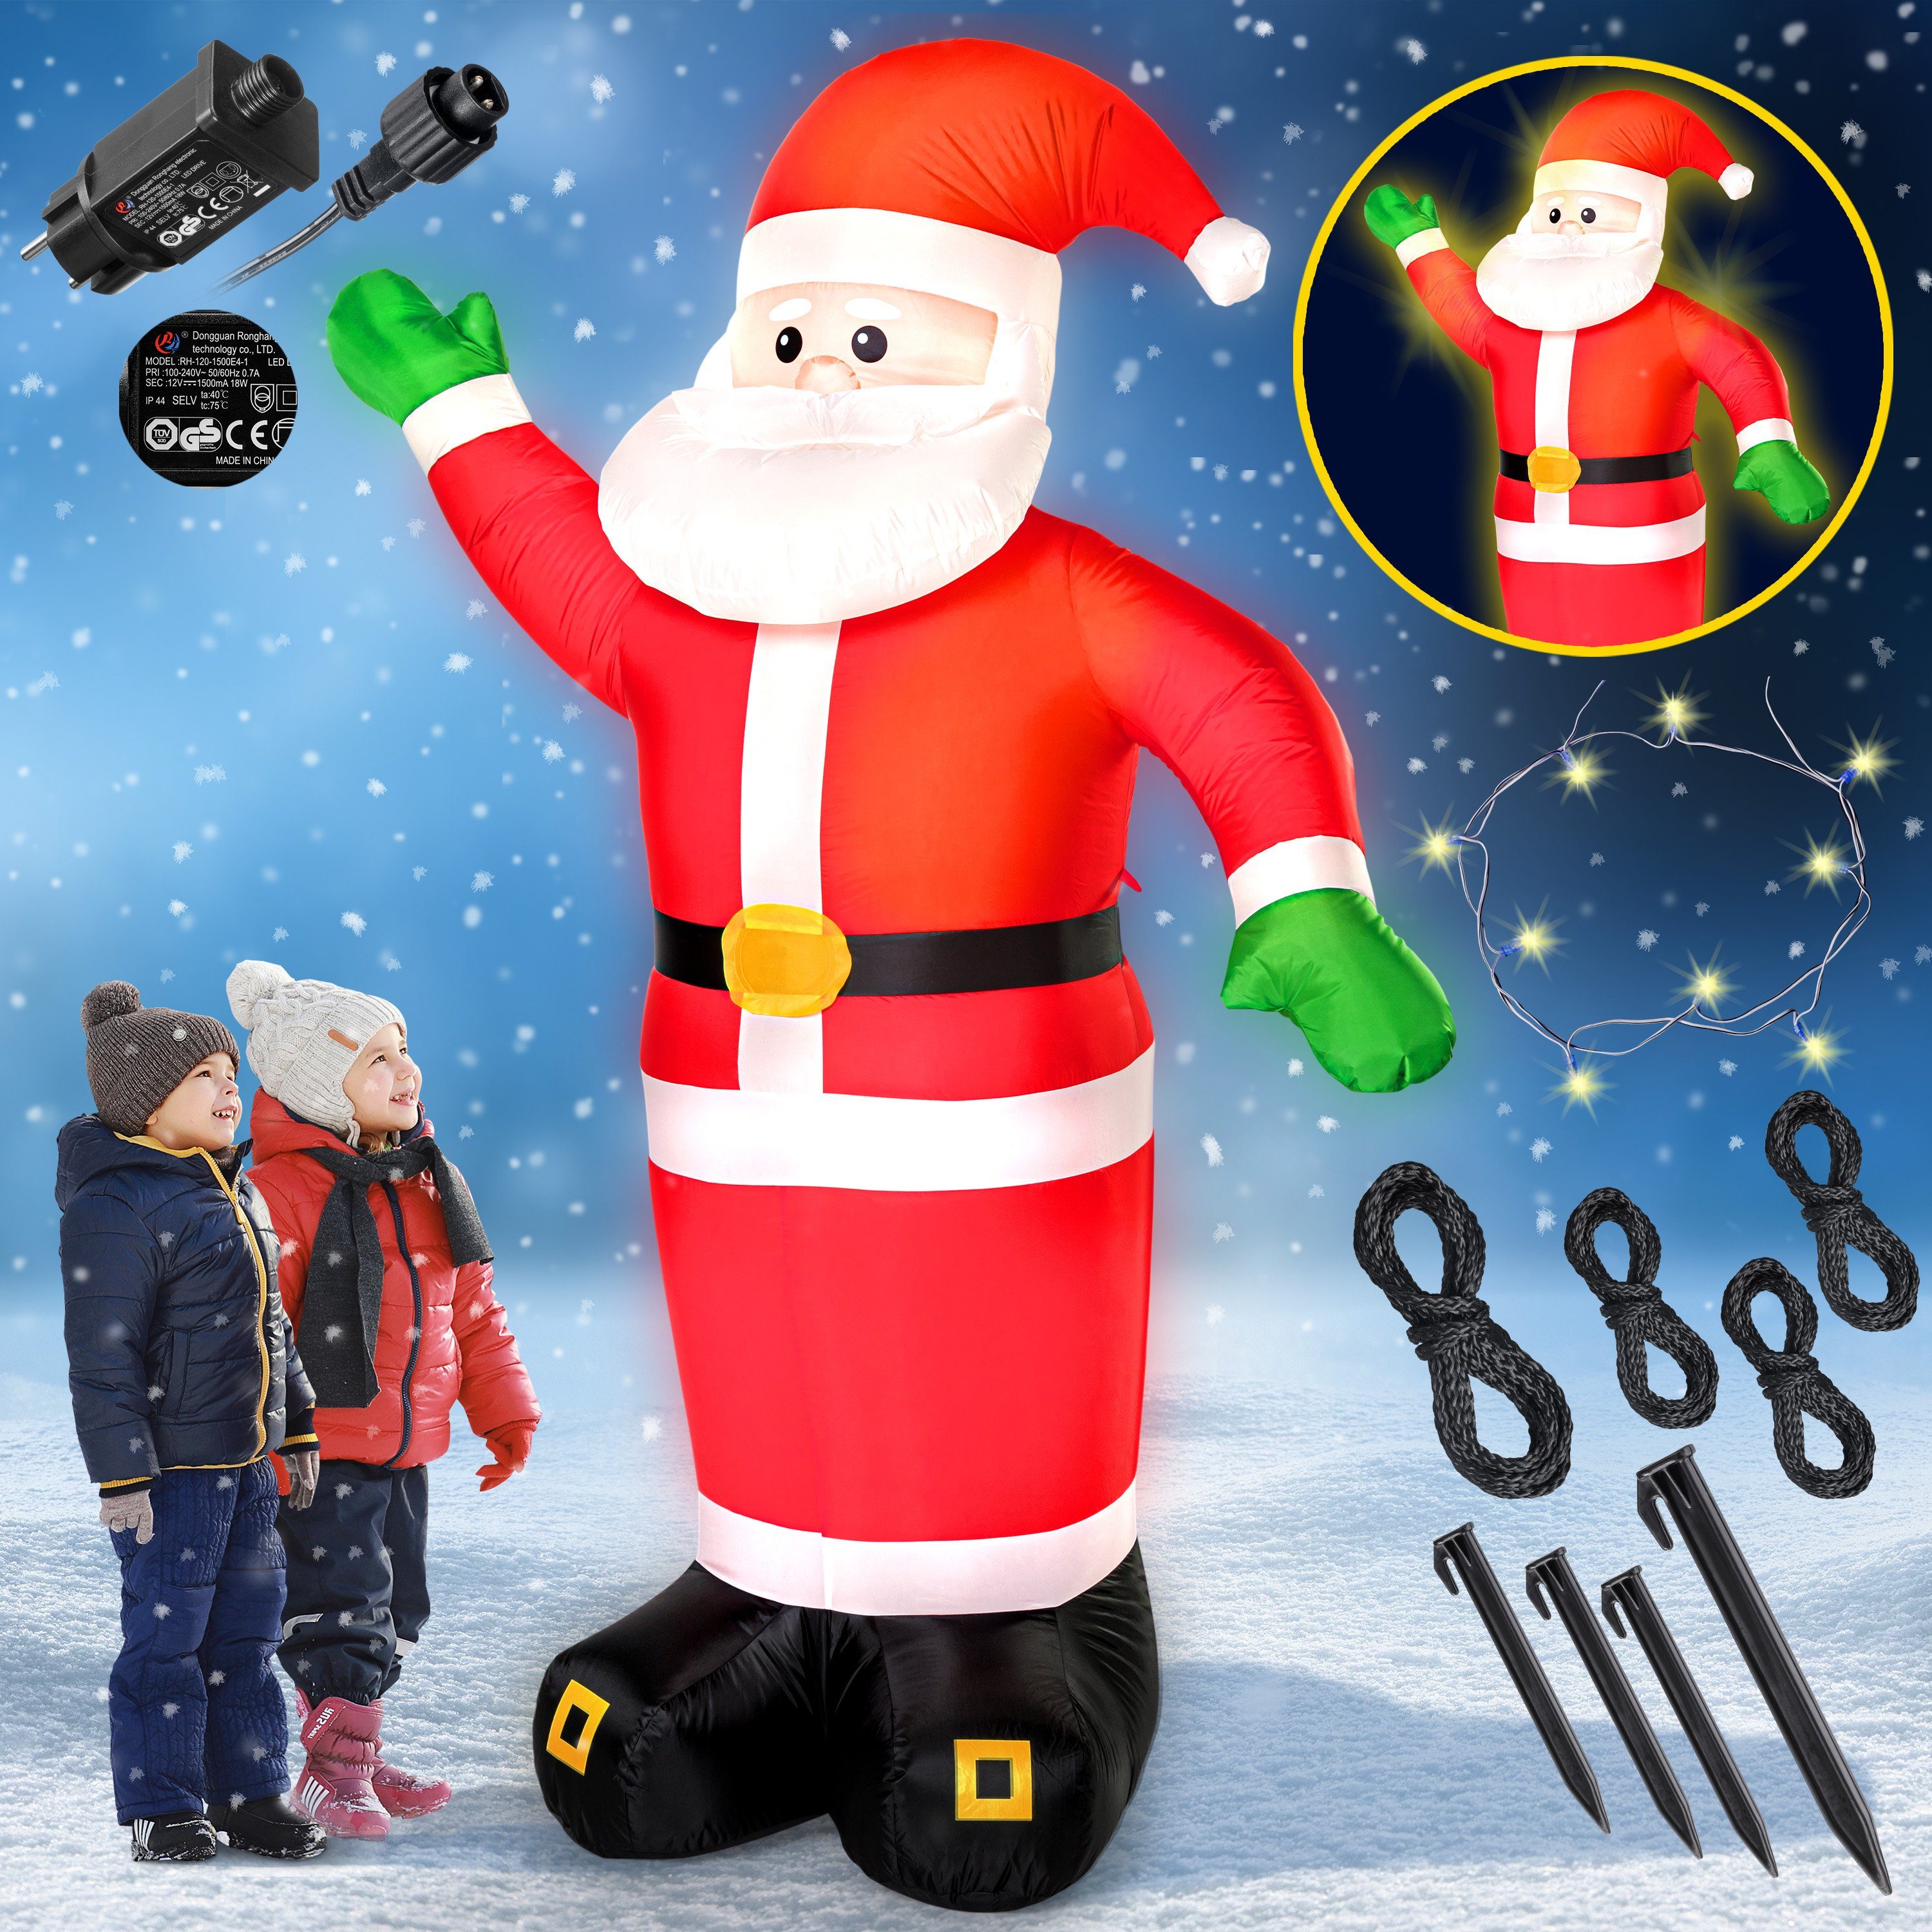 monzana Weihnachtsmann, Aufblasbarer XXL 250cm LED Beleuchtet Befestigungsmaterial IP44 Außen